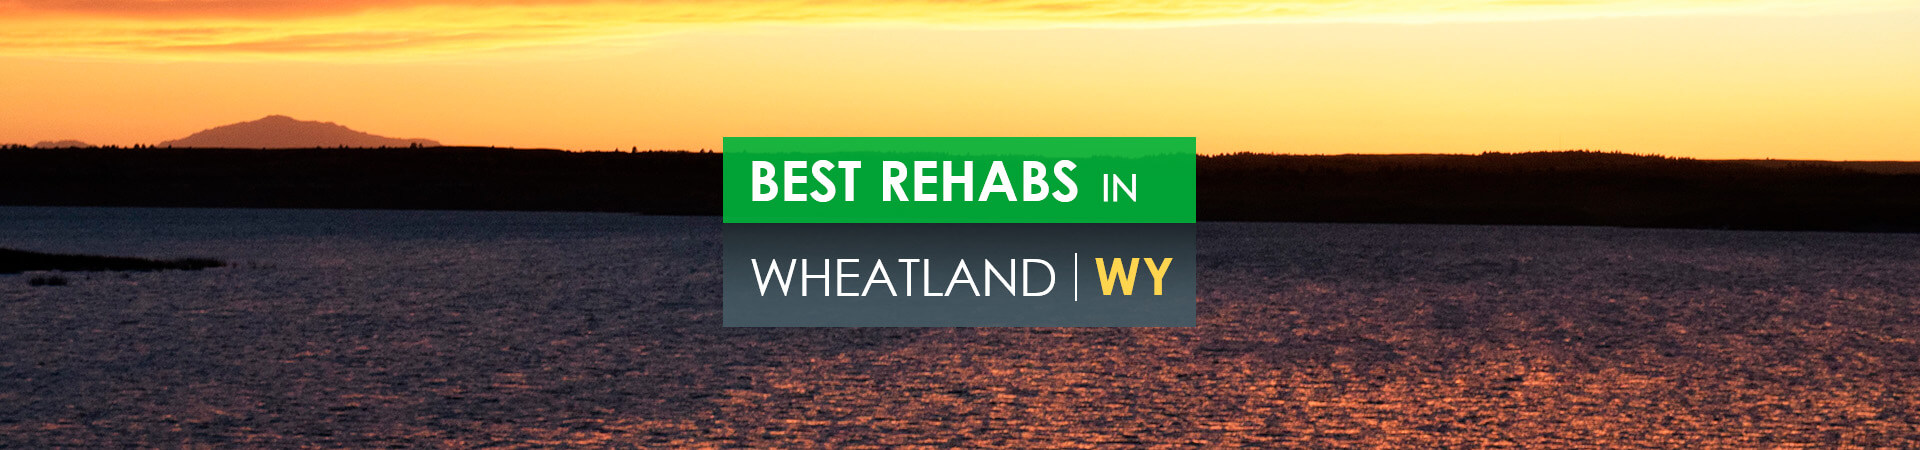 Best rehabs in Wheatland, WY